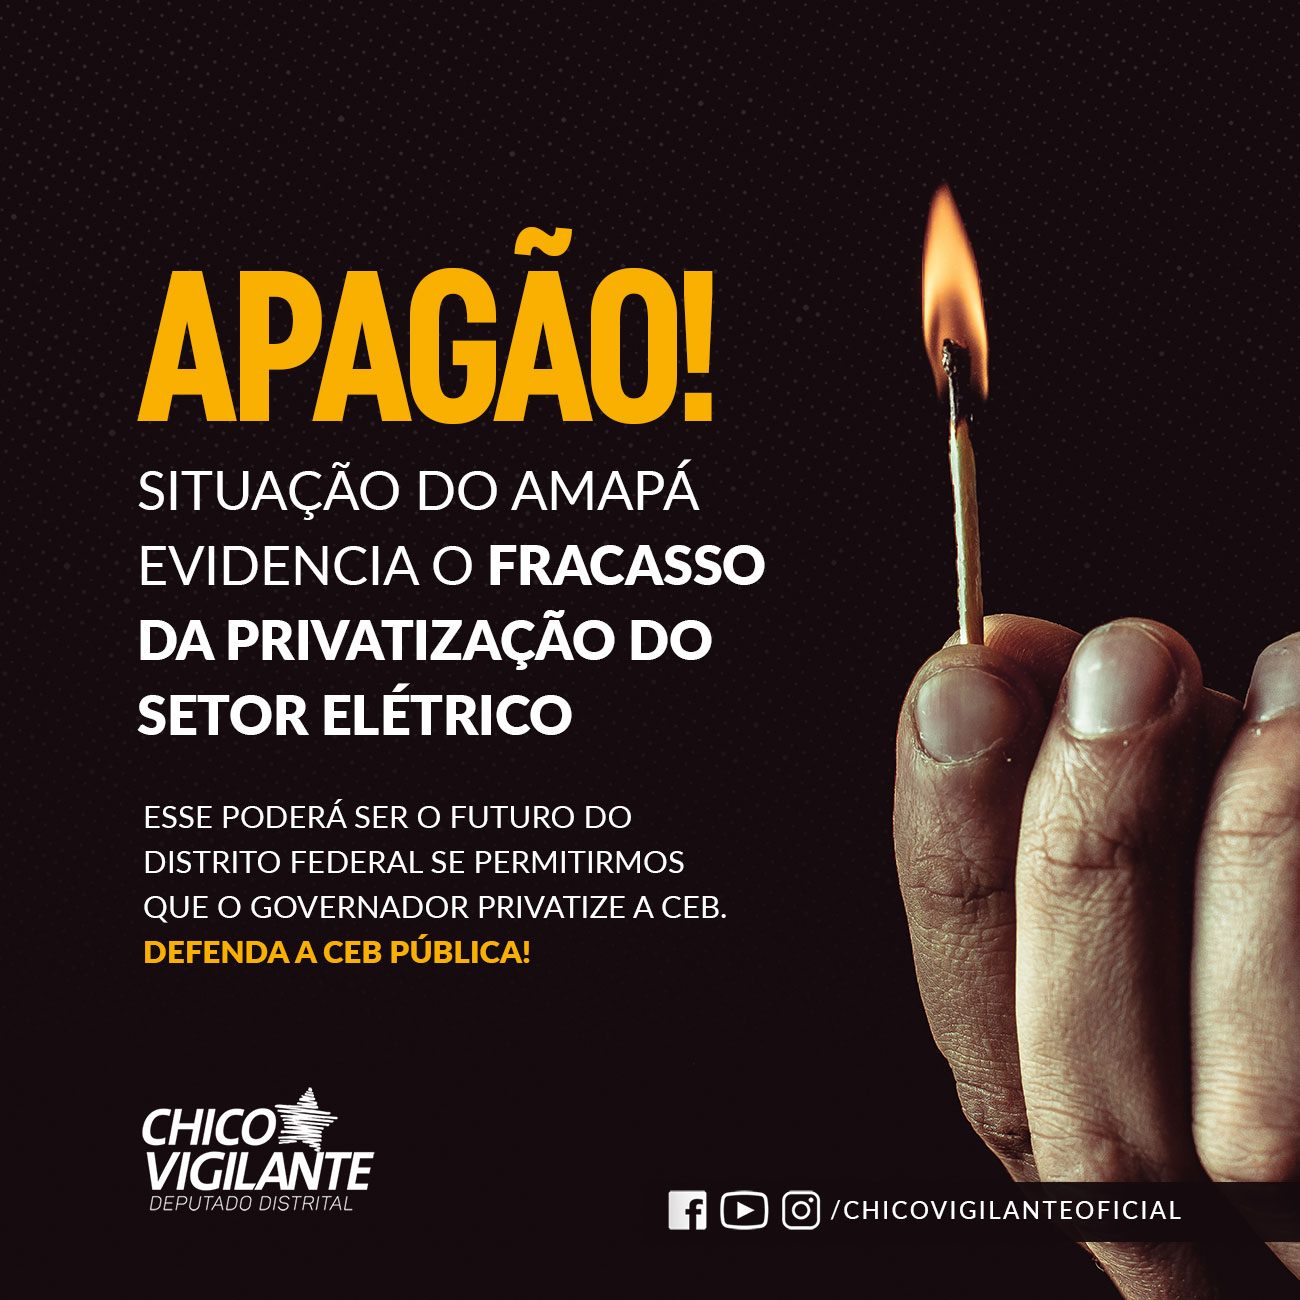 Apagão! Situação do Amapá evidencia o fracasso da privatização do Setor Elétrico.